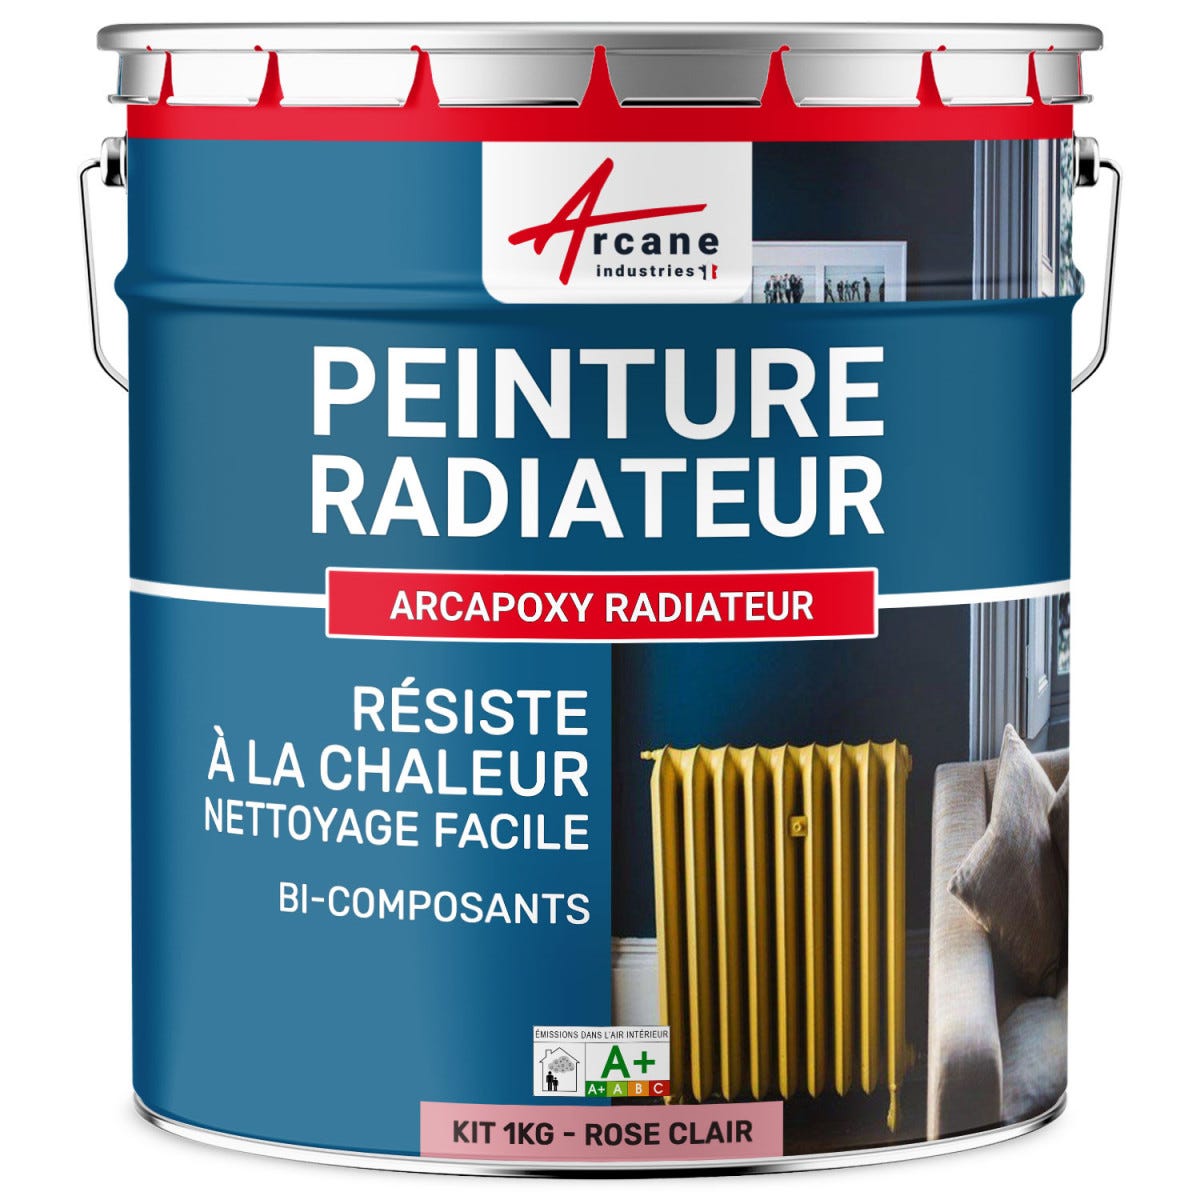 Peinture Radiateur fonte acier alu - PEINTURE RADIATEUR - 1 kg (jusqu'à 5 m² en 2 couches) - Rose Clair - RAL 3015 - ARCANE INDUSTRIES 0